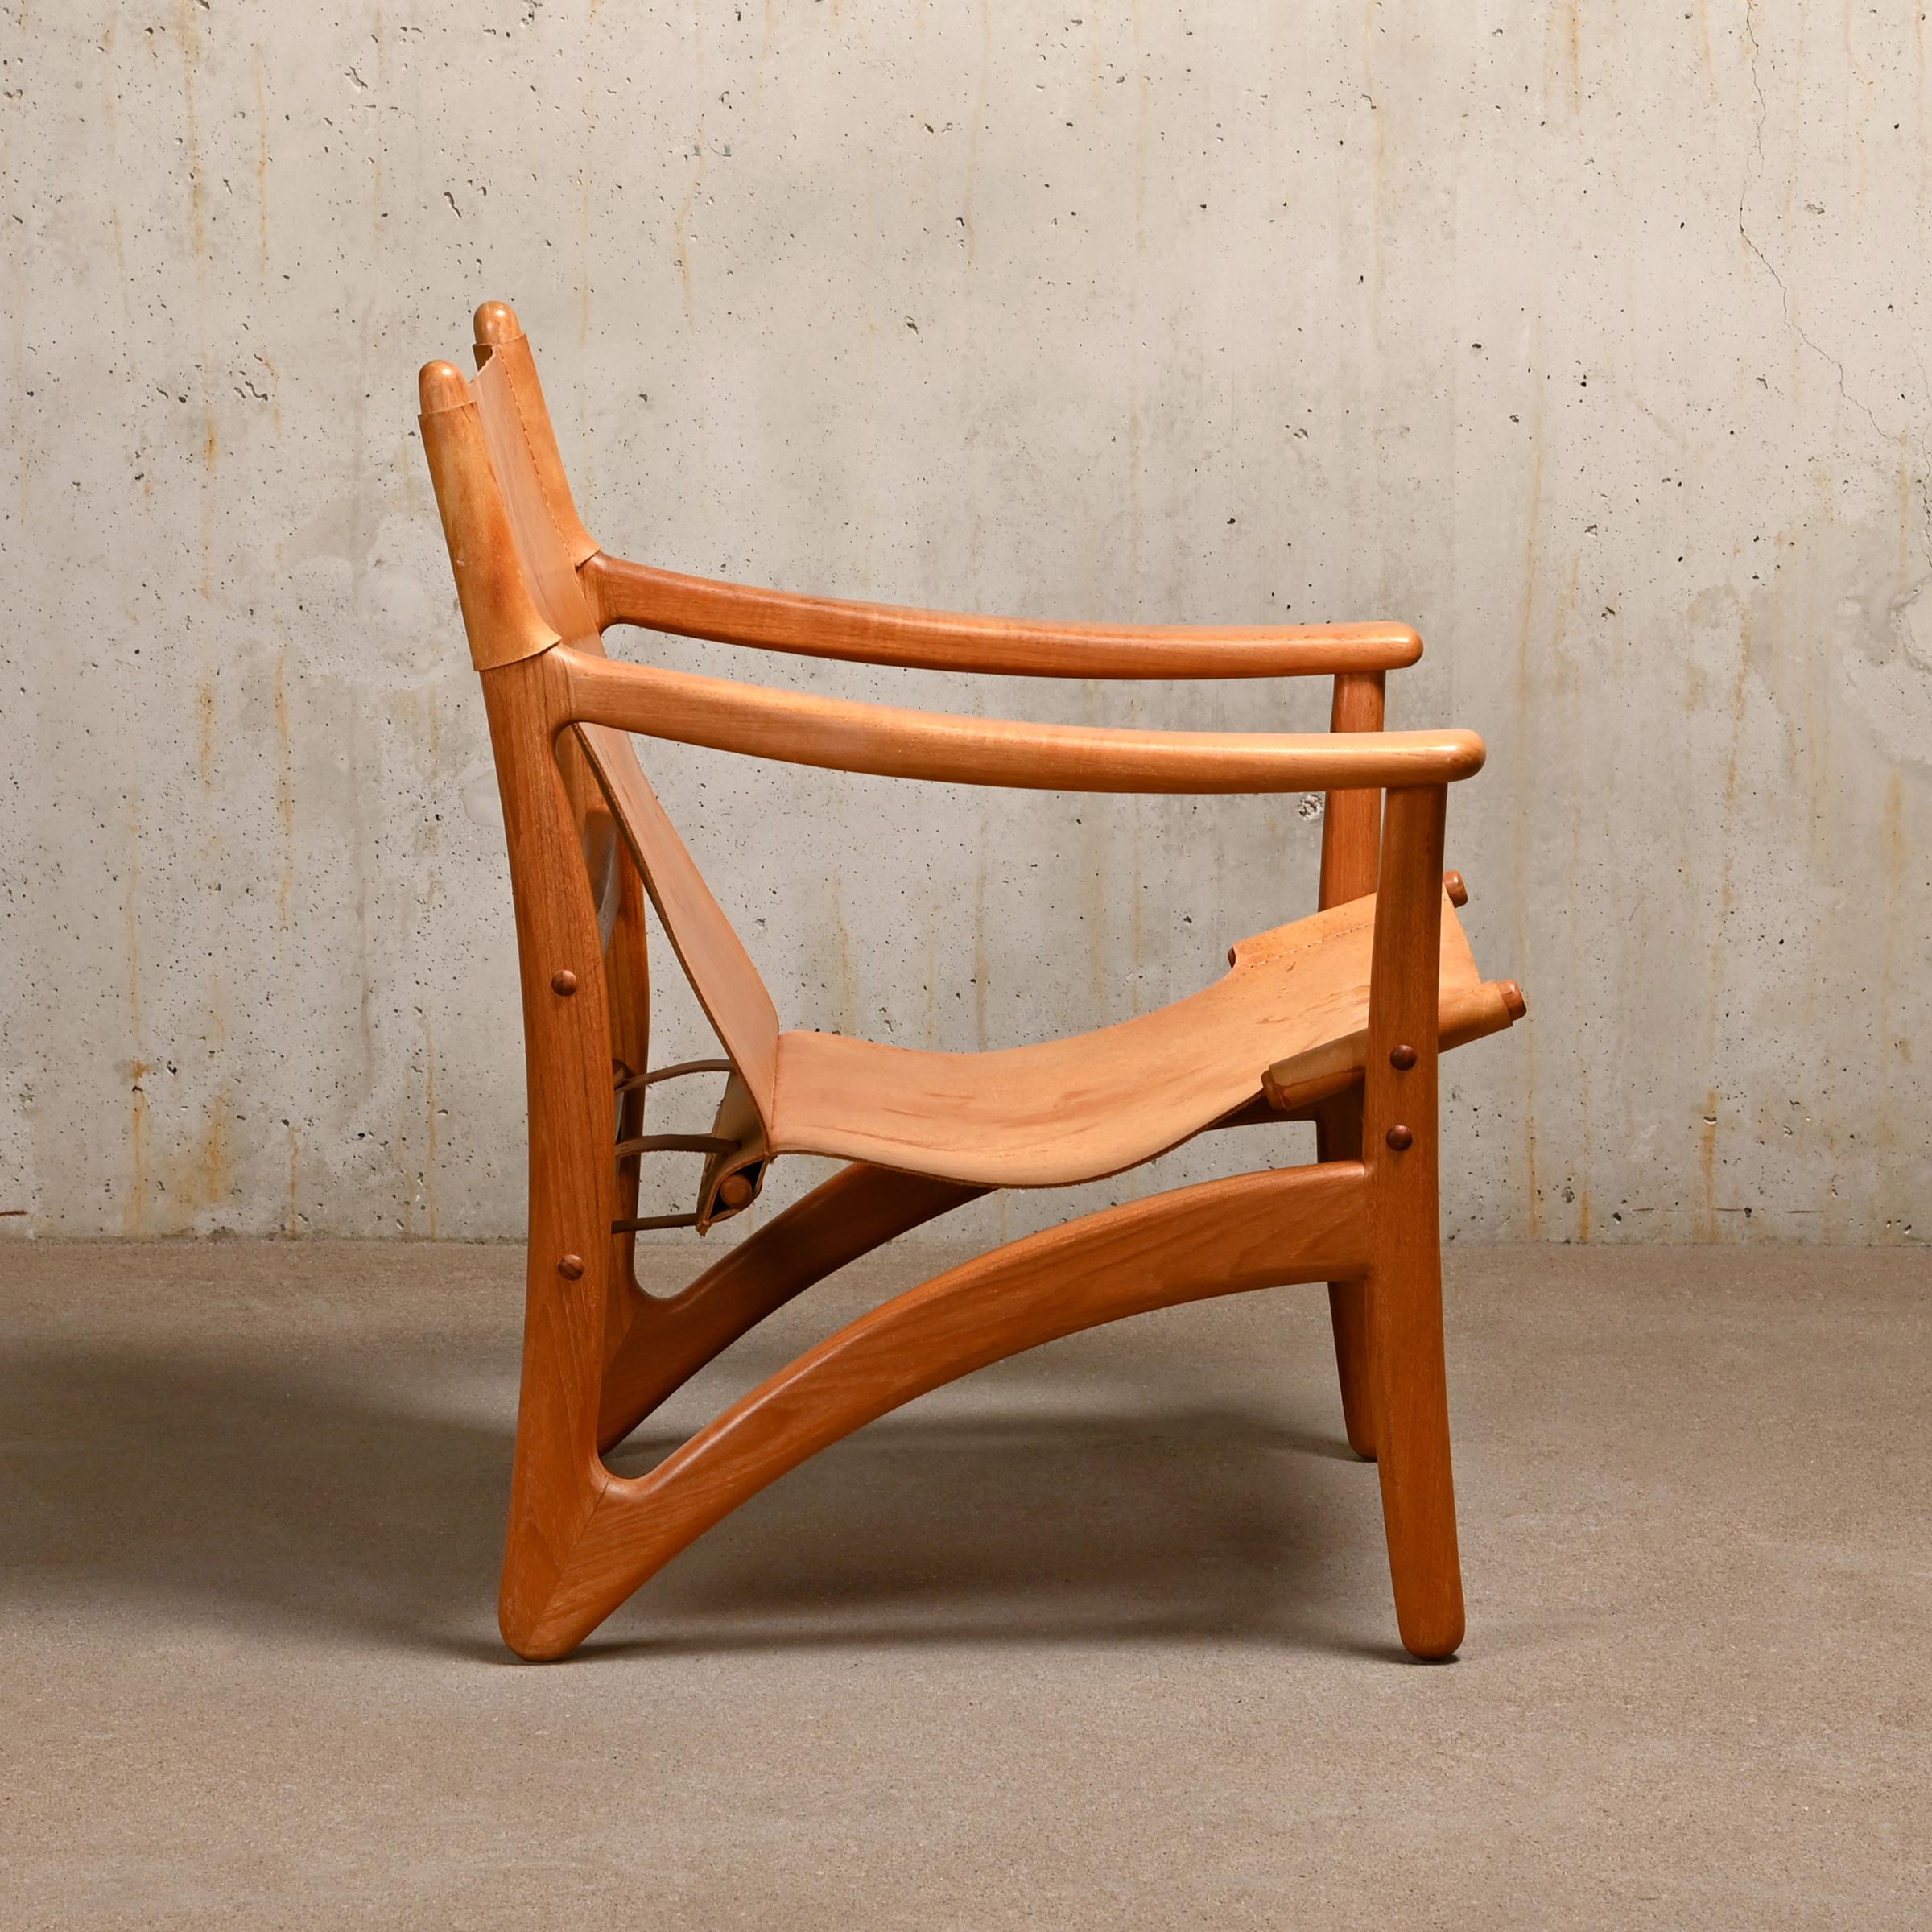 Scandinavian Modern Arne Vodder Pair Lounge Chairs in Teak and Saddle Leather for Kircodan, Denmark